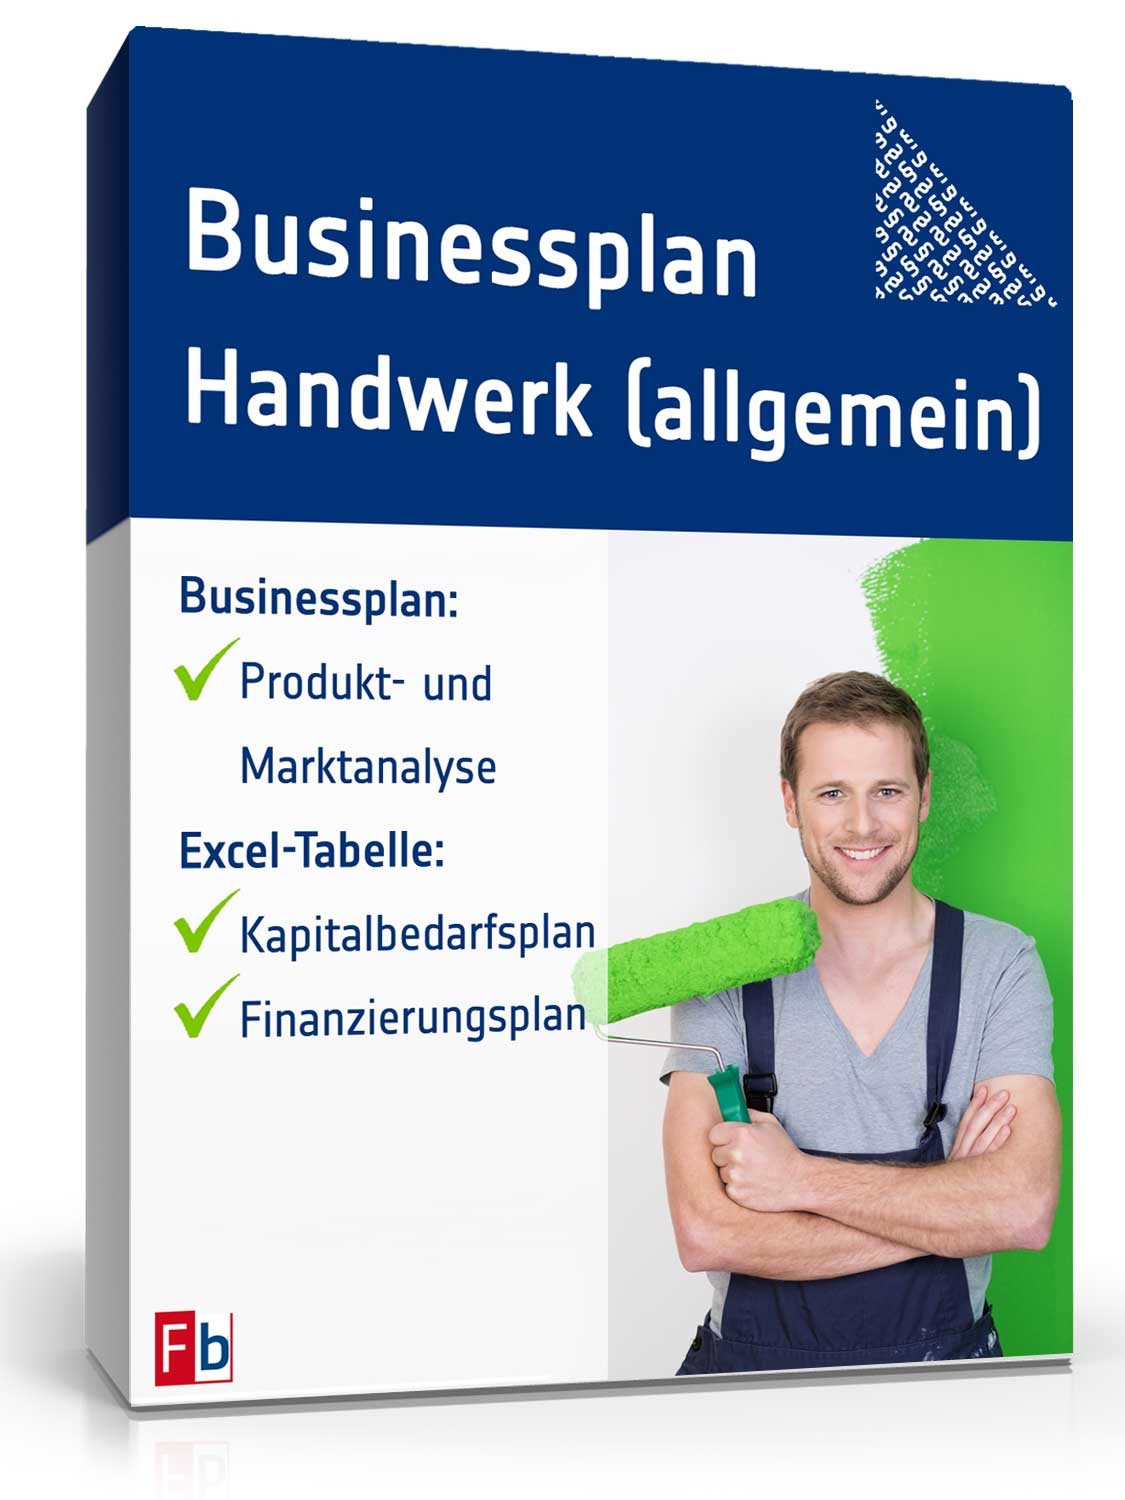 Hauptbild des Produkts: Businessplan Handwerk